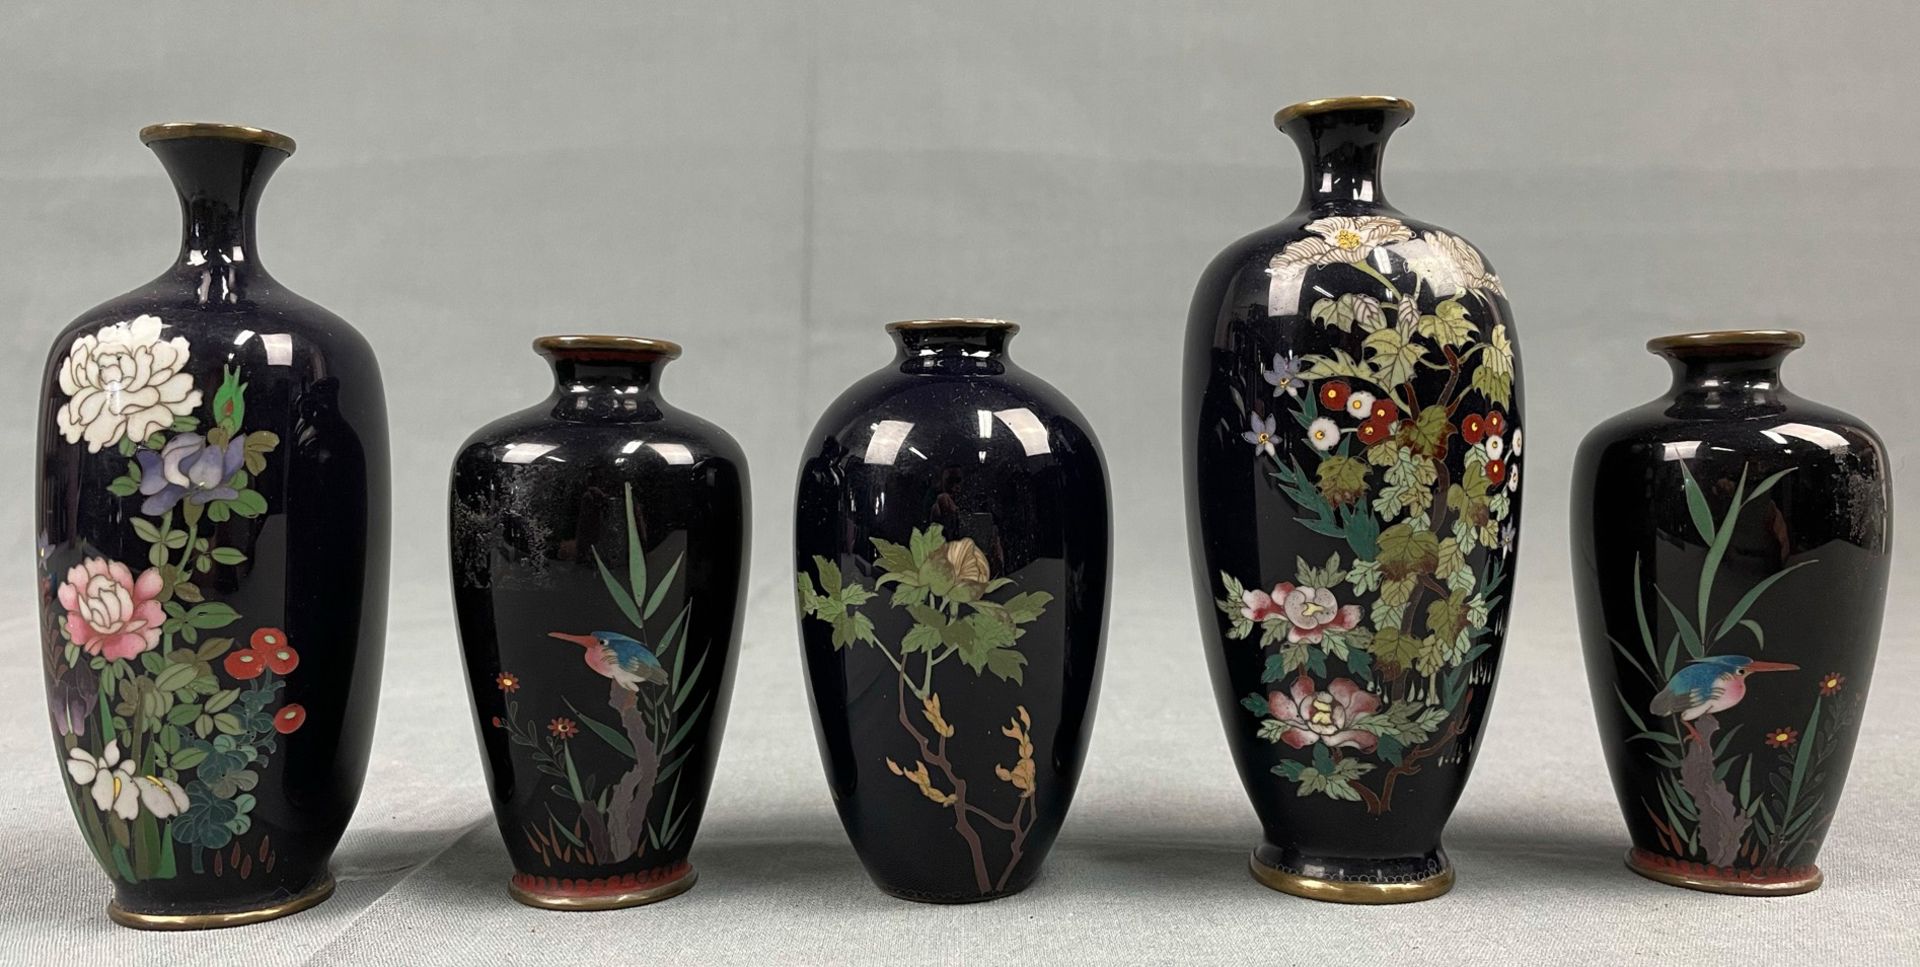 18 Cloisonné Vasen. Wohl Japan, China alt. Mit blauem Fond. - Image 18 of 23